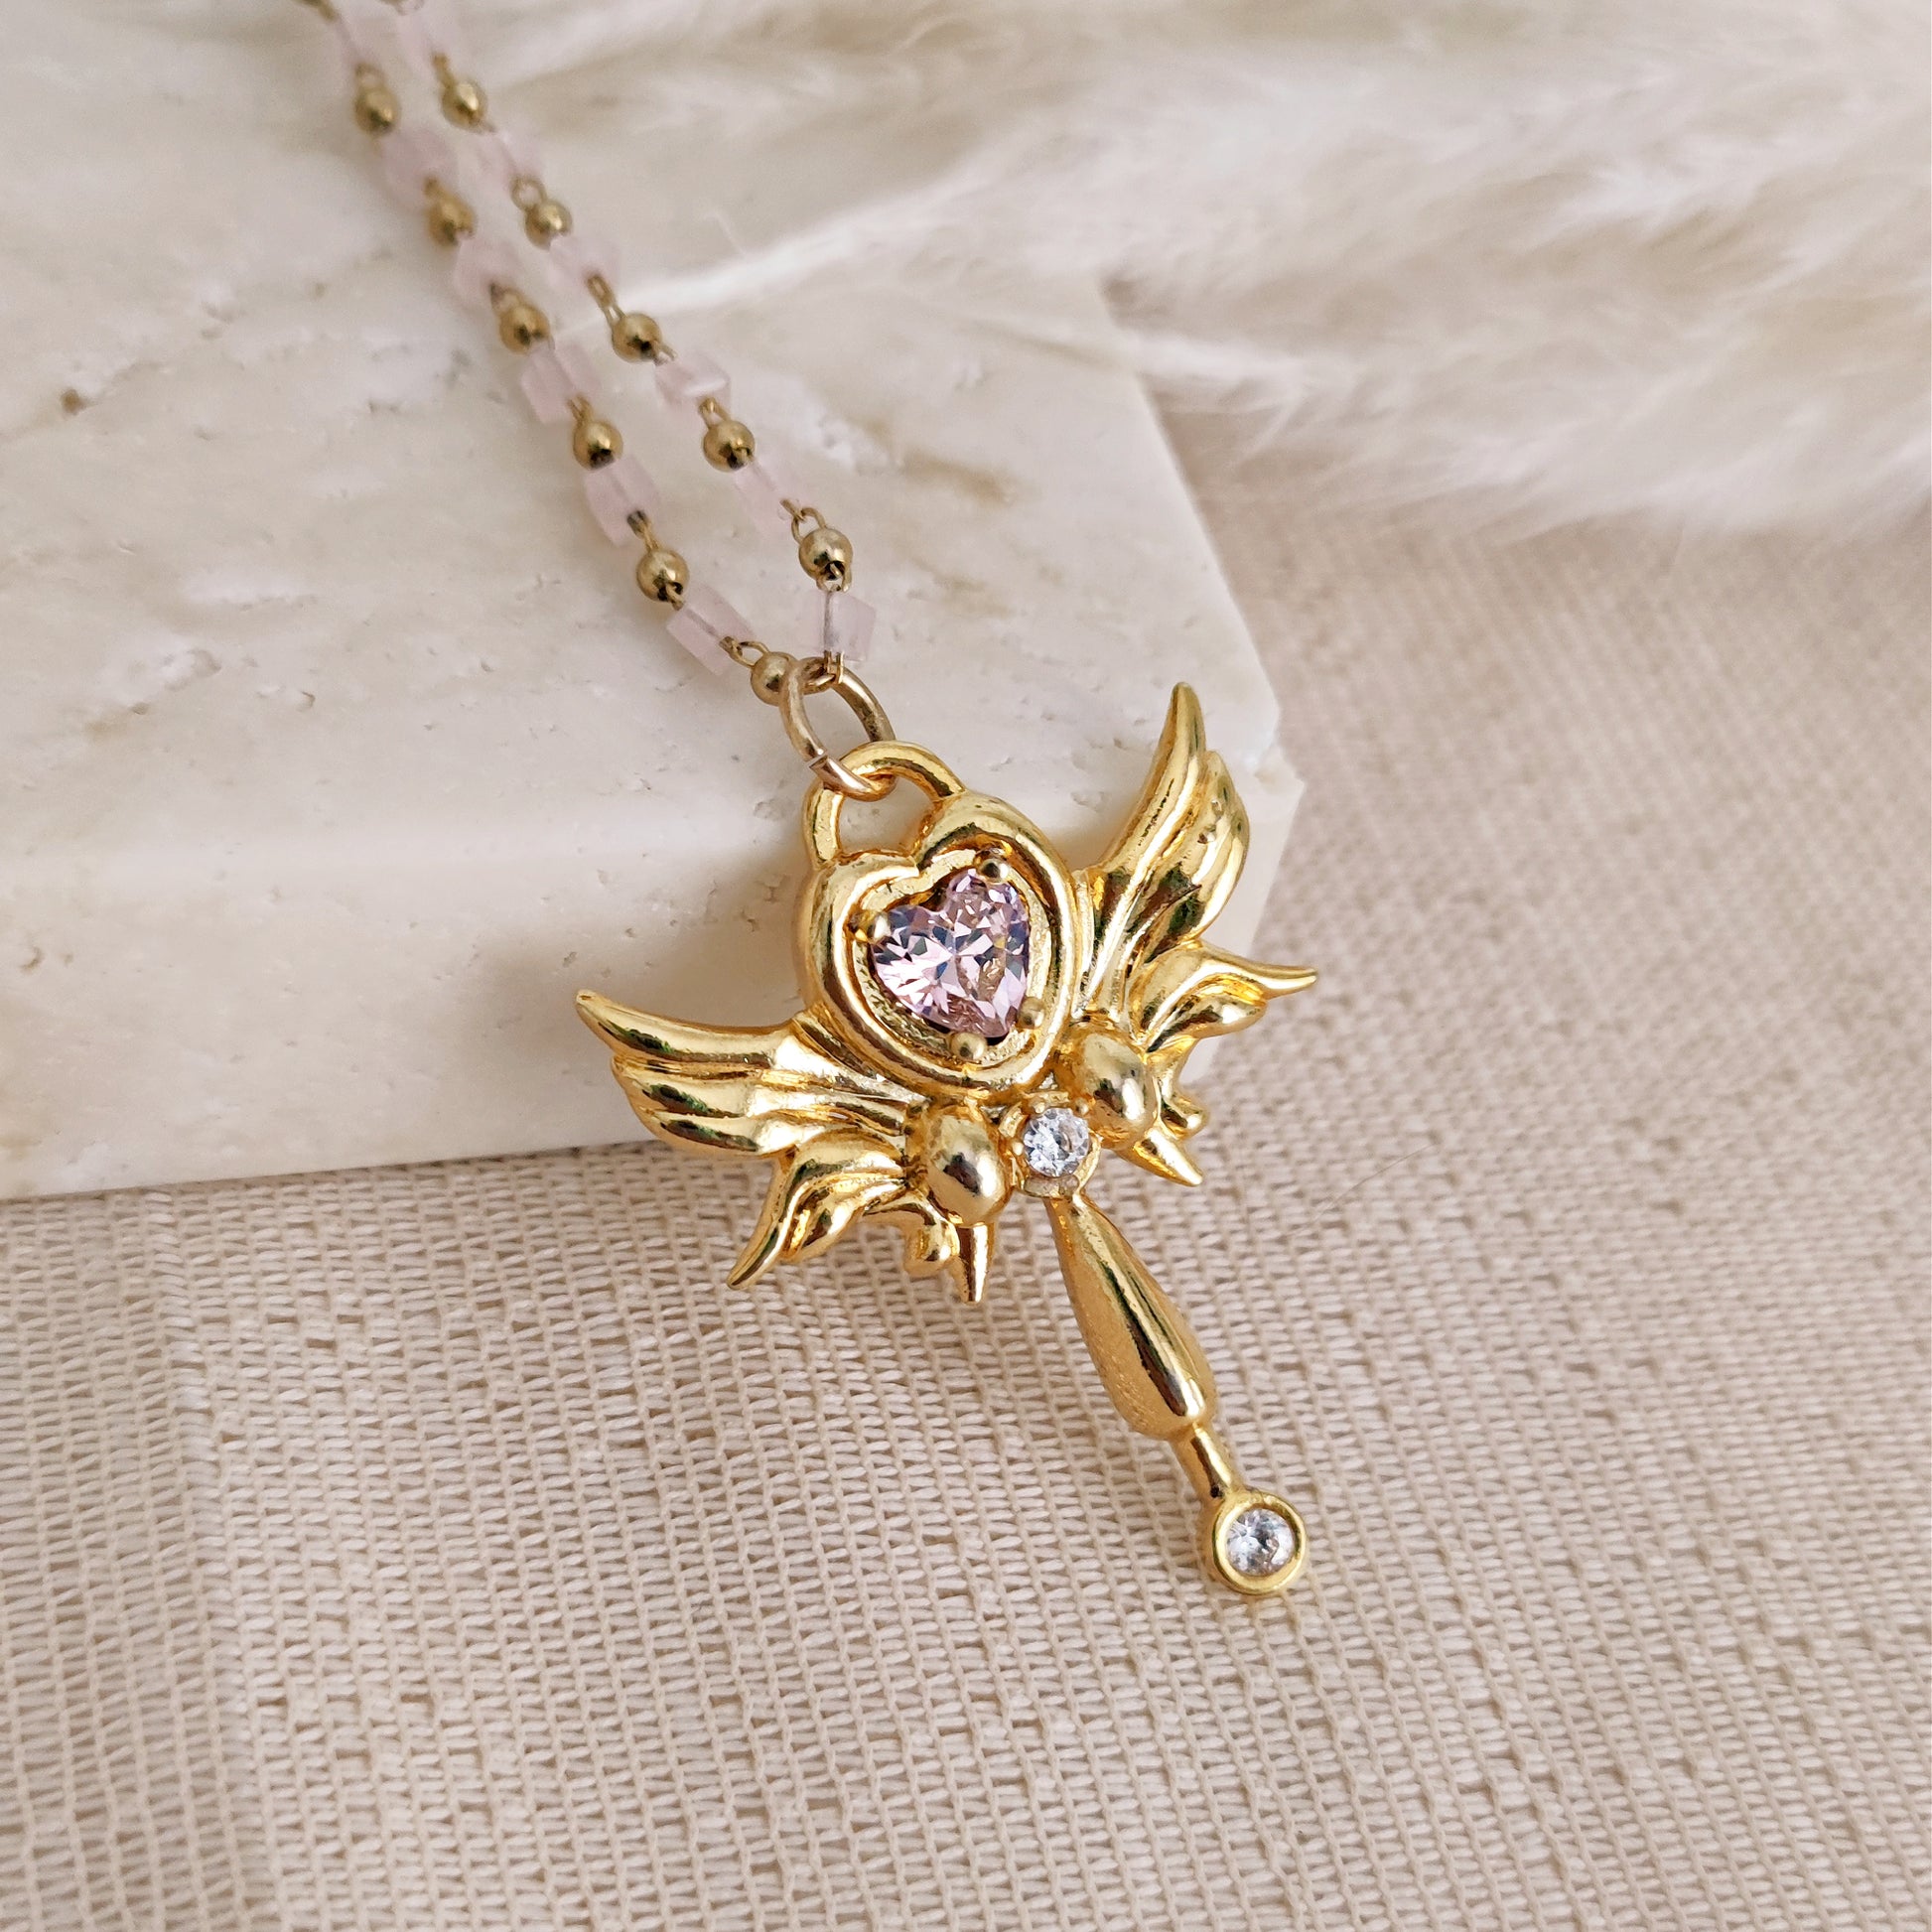 Secret Garden Key Necklace in Brass or Silver